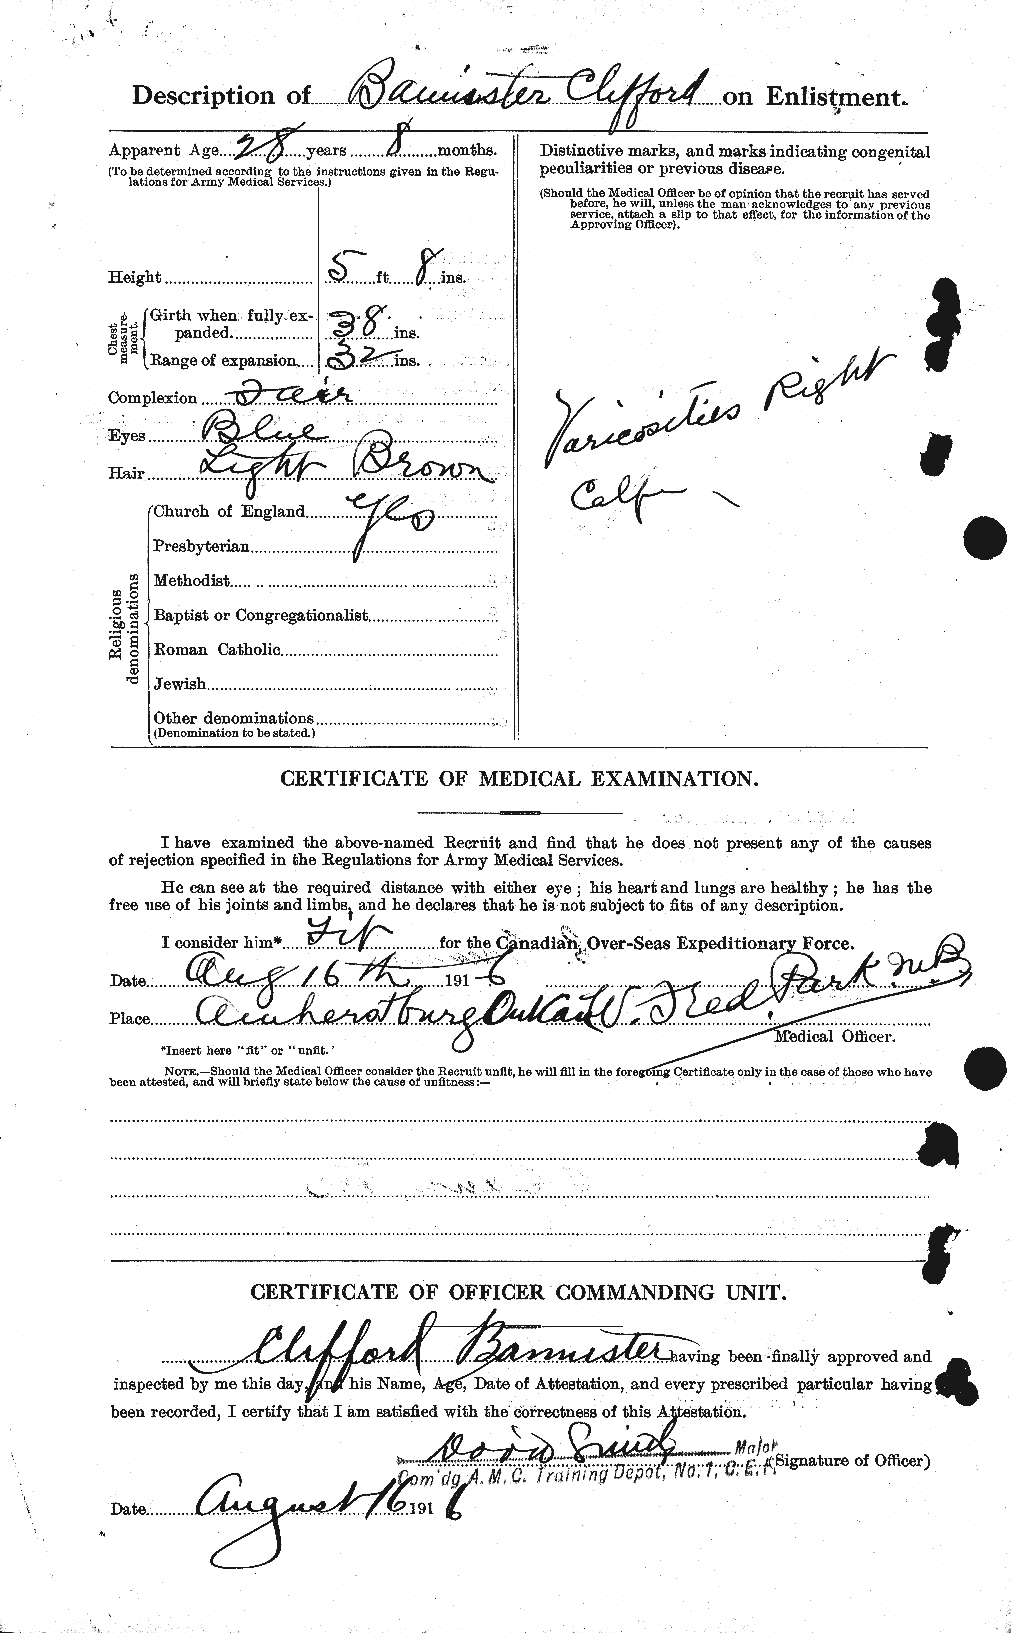 Dossiers du Personnel de la Première Guerre mondiale - CEC 224807b